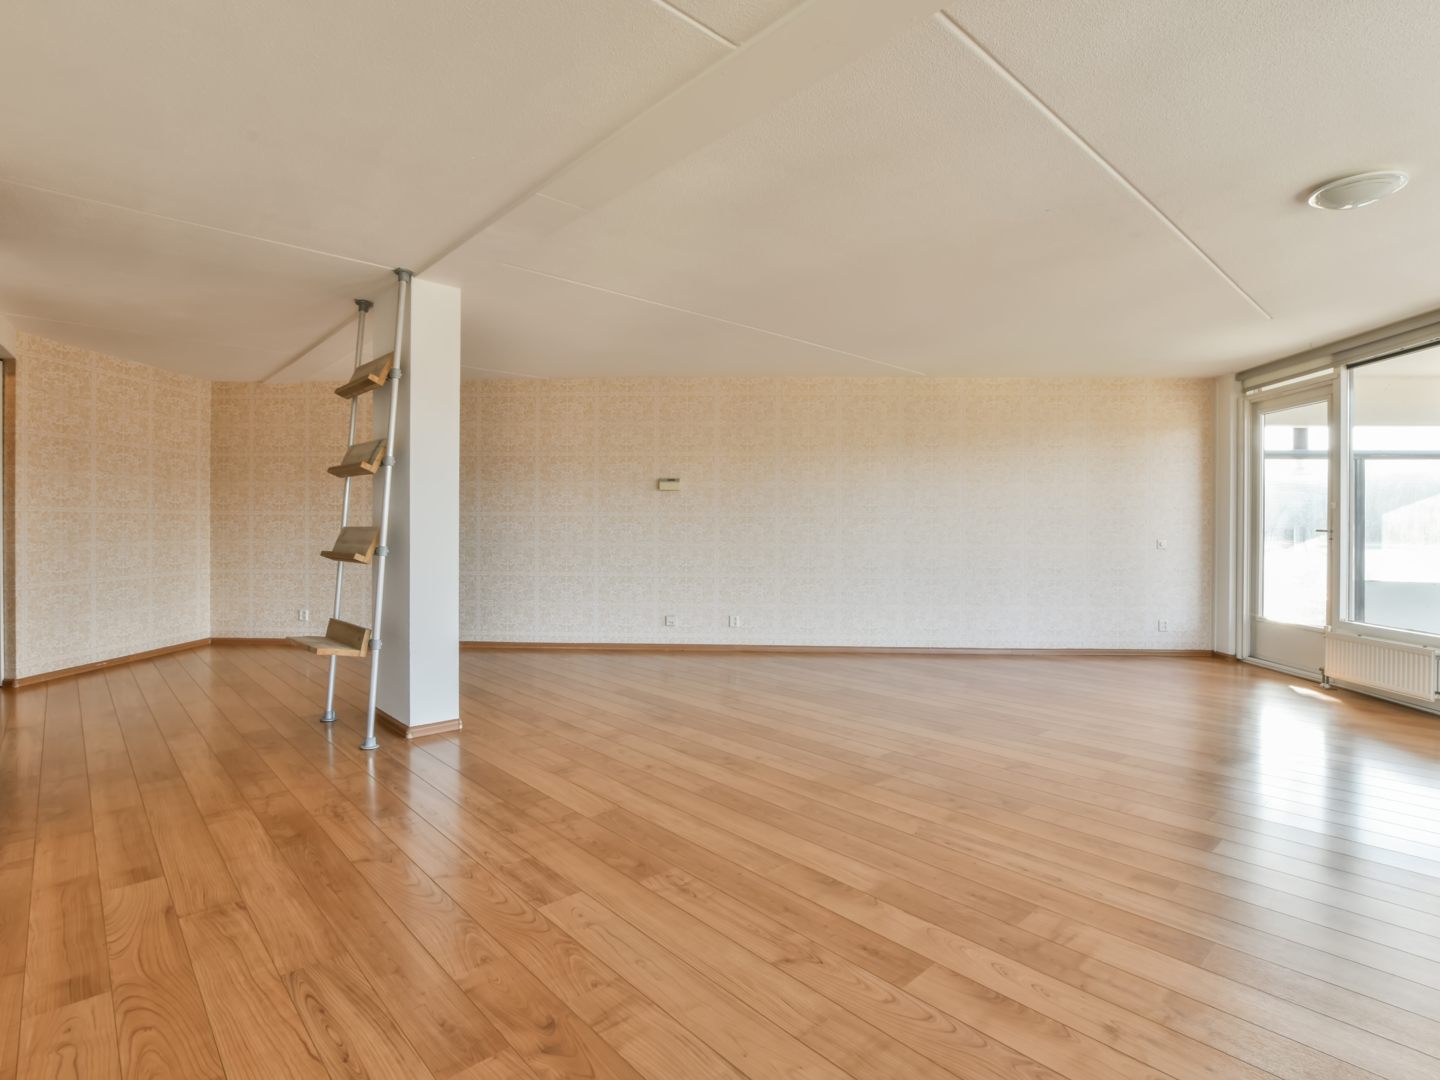 Eine große leerstehende Wohnung ohne Wände als Beispielbild für offene Wohnkonzepte